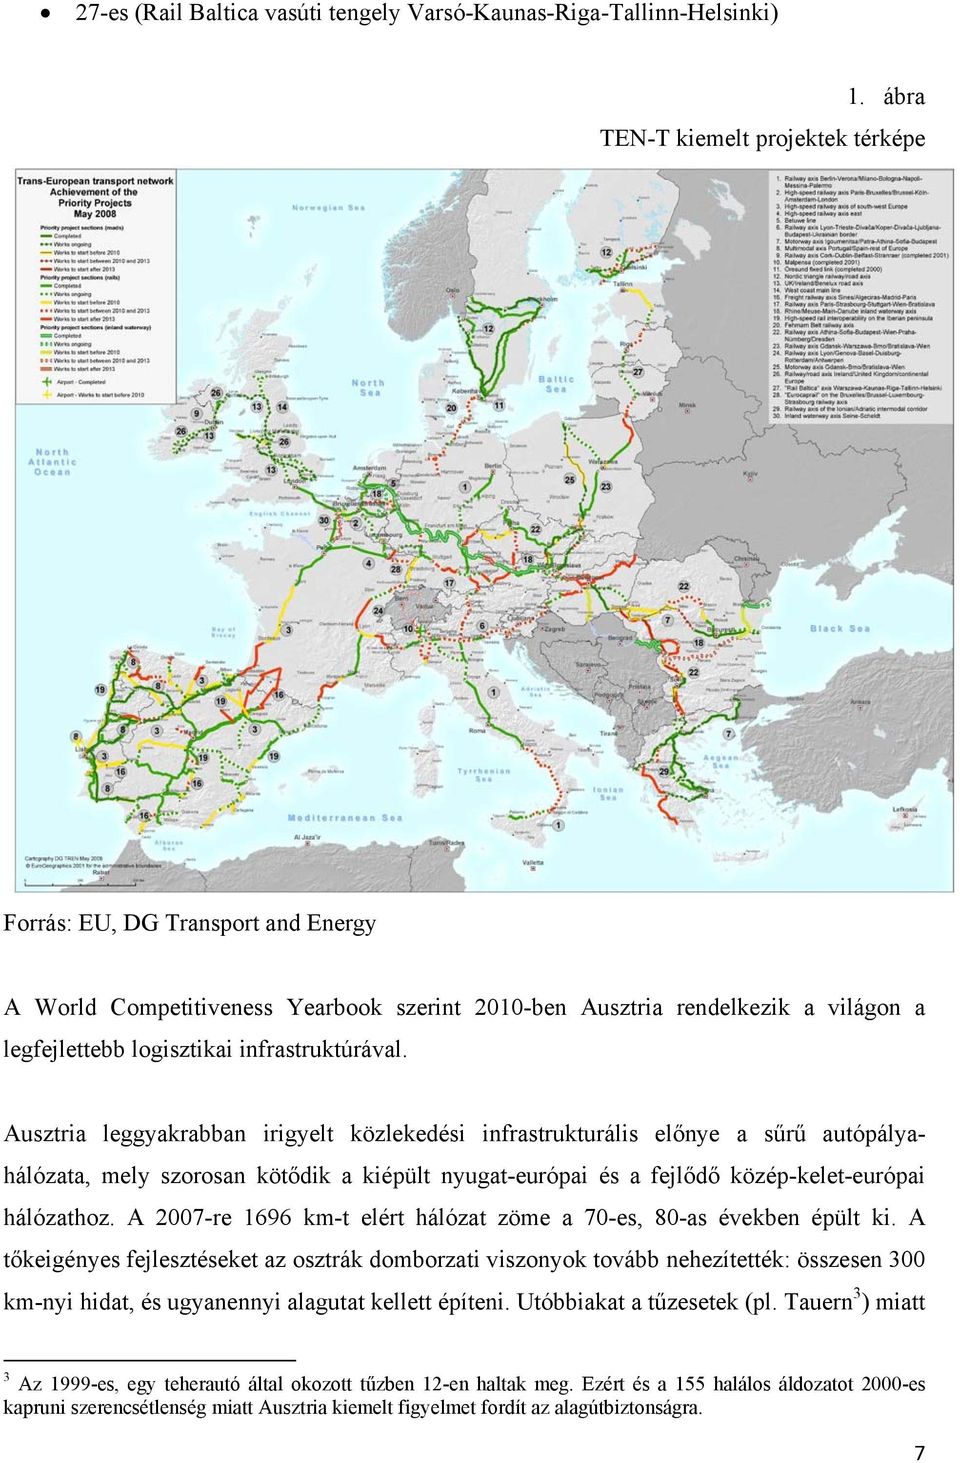 Ausztria leggyakrabban irigyelt közlekedési infrastrukturális előnye a sűrű autópályahálózata, mely szorosan kötődik a kiépült nyugat-európai és a fejlődő közép-kelet-európai hálózathoz.